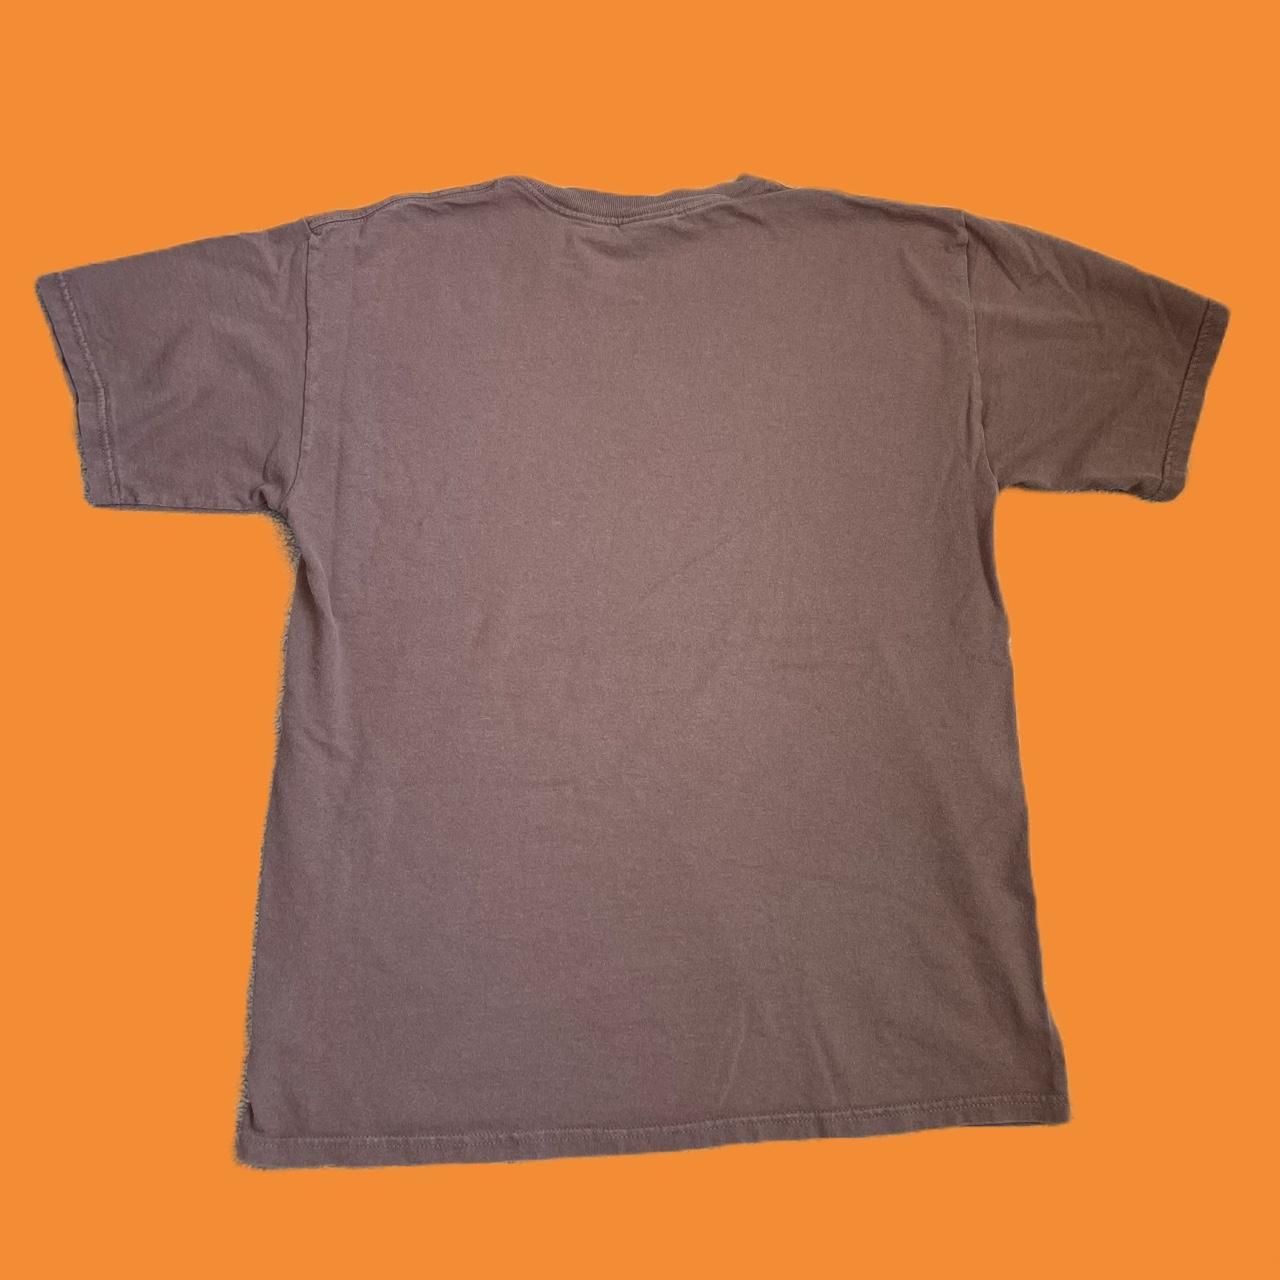 Nickelodeon Men's Brown and Tan T-shirt | Depop